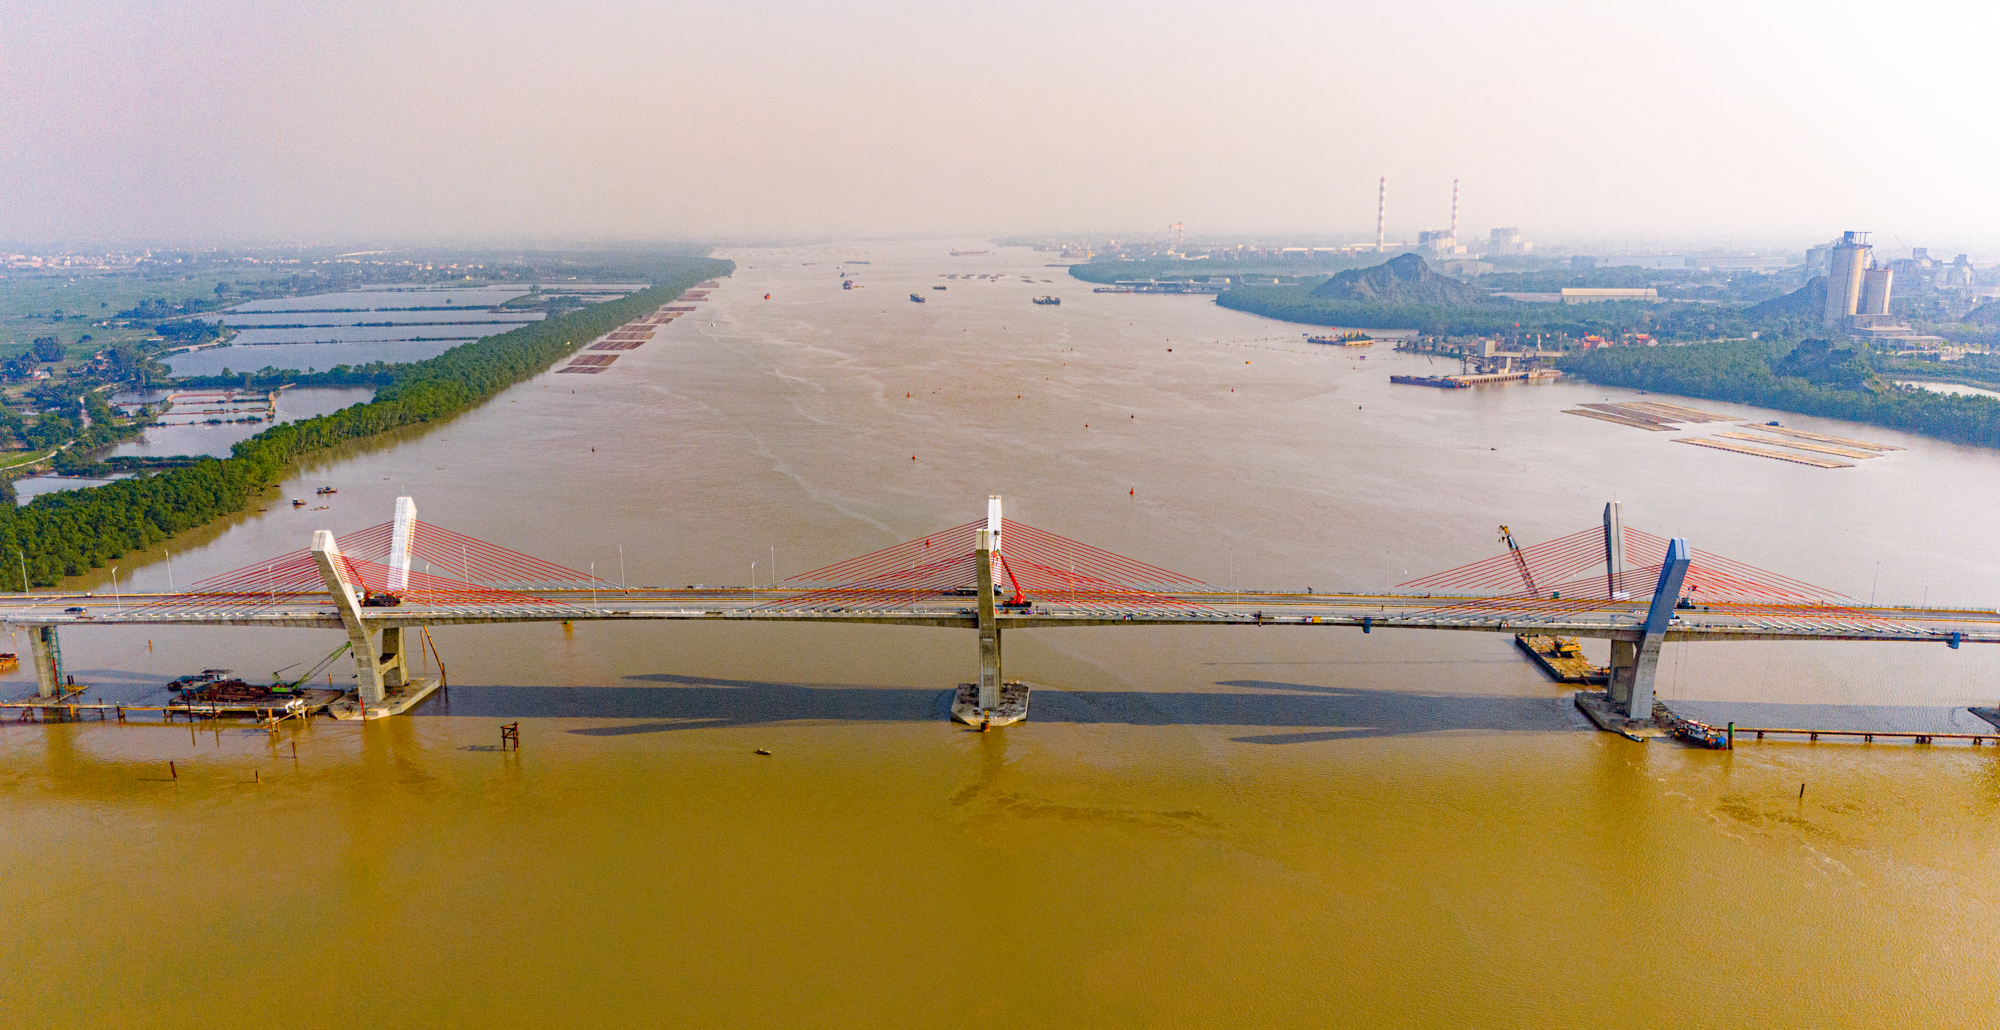 Toàn cảnh khu vực được xây cây cầu trị giá 2.000 tỷ sắp hoàn thành, kết nối Hải Phòng và Quảng Ninh, đưa tuyến phà sông lớn nhất miền Bắc về “nghỉ hưu”.- Ảnh 4.